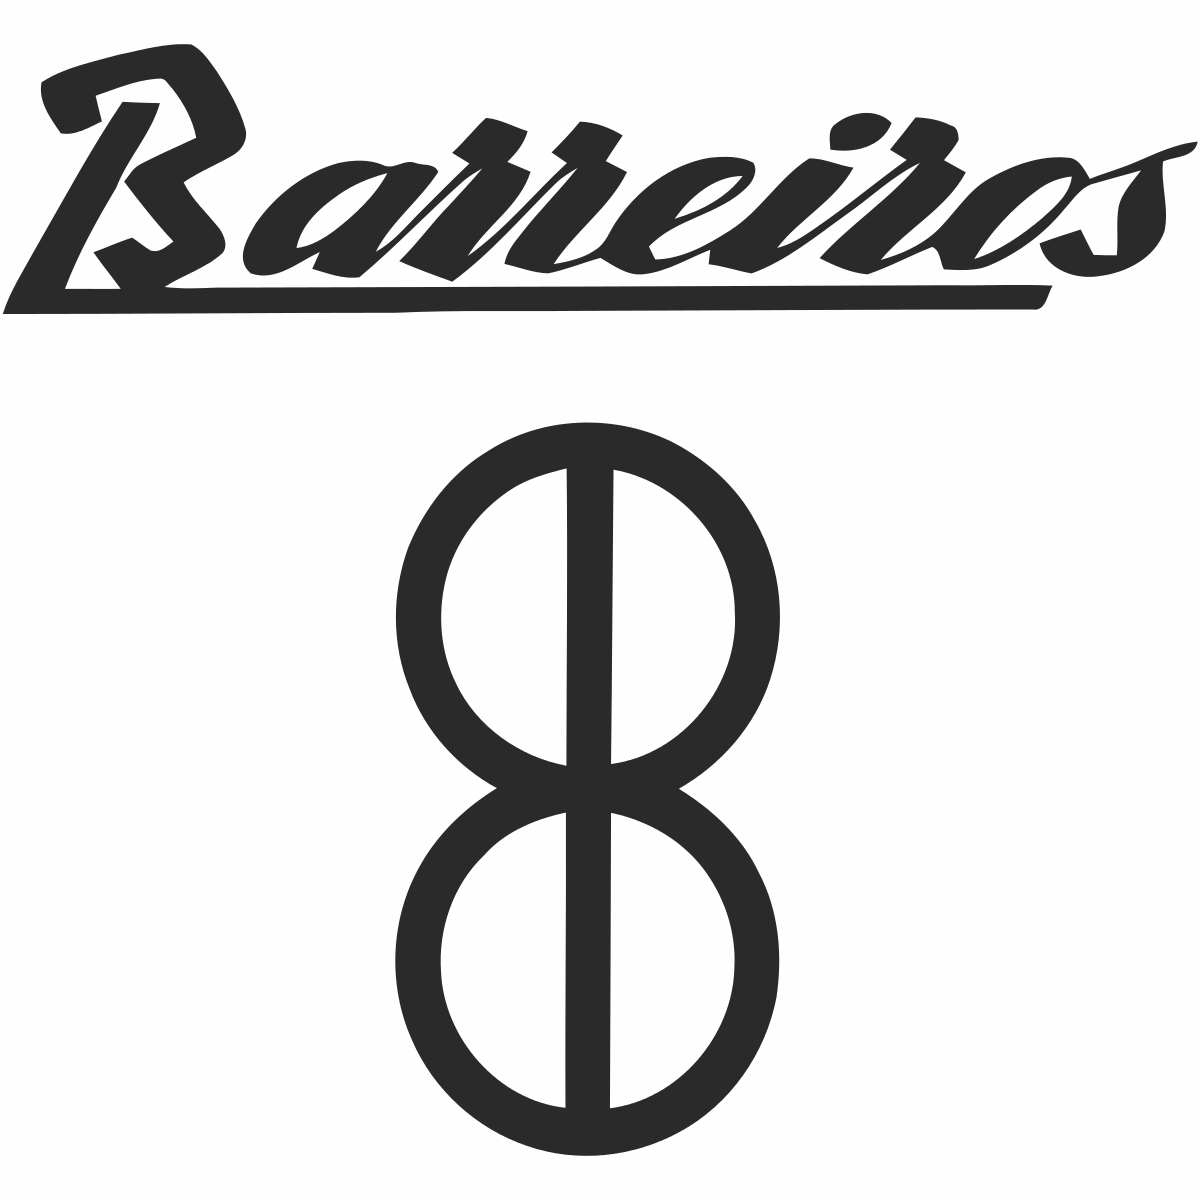 Barreiros Logo photo - 1